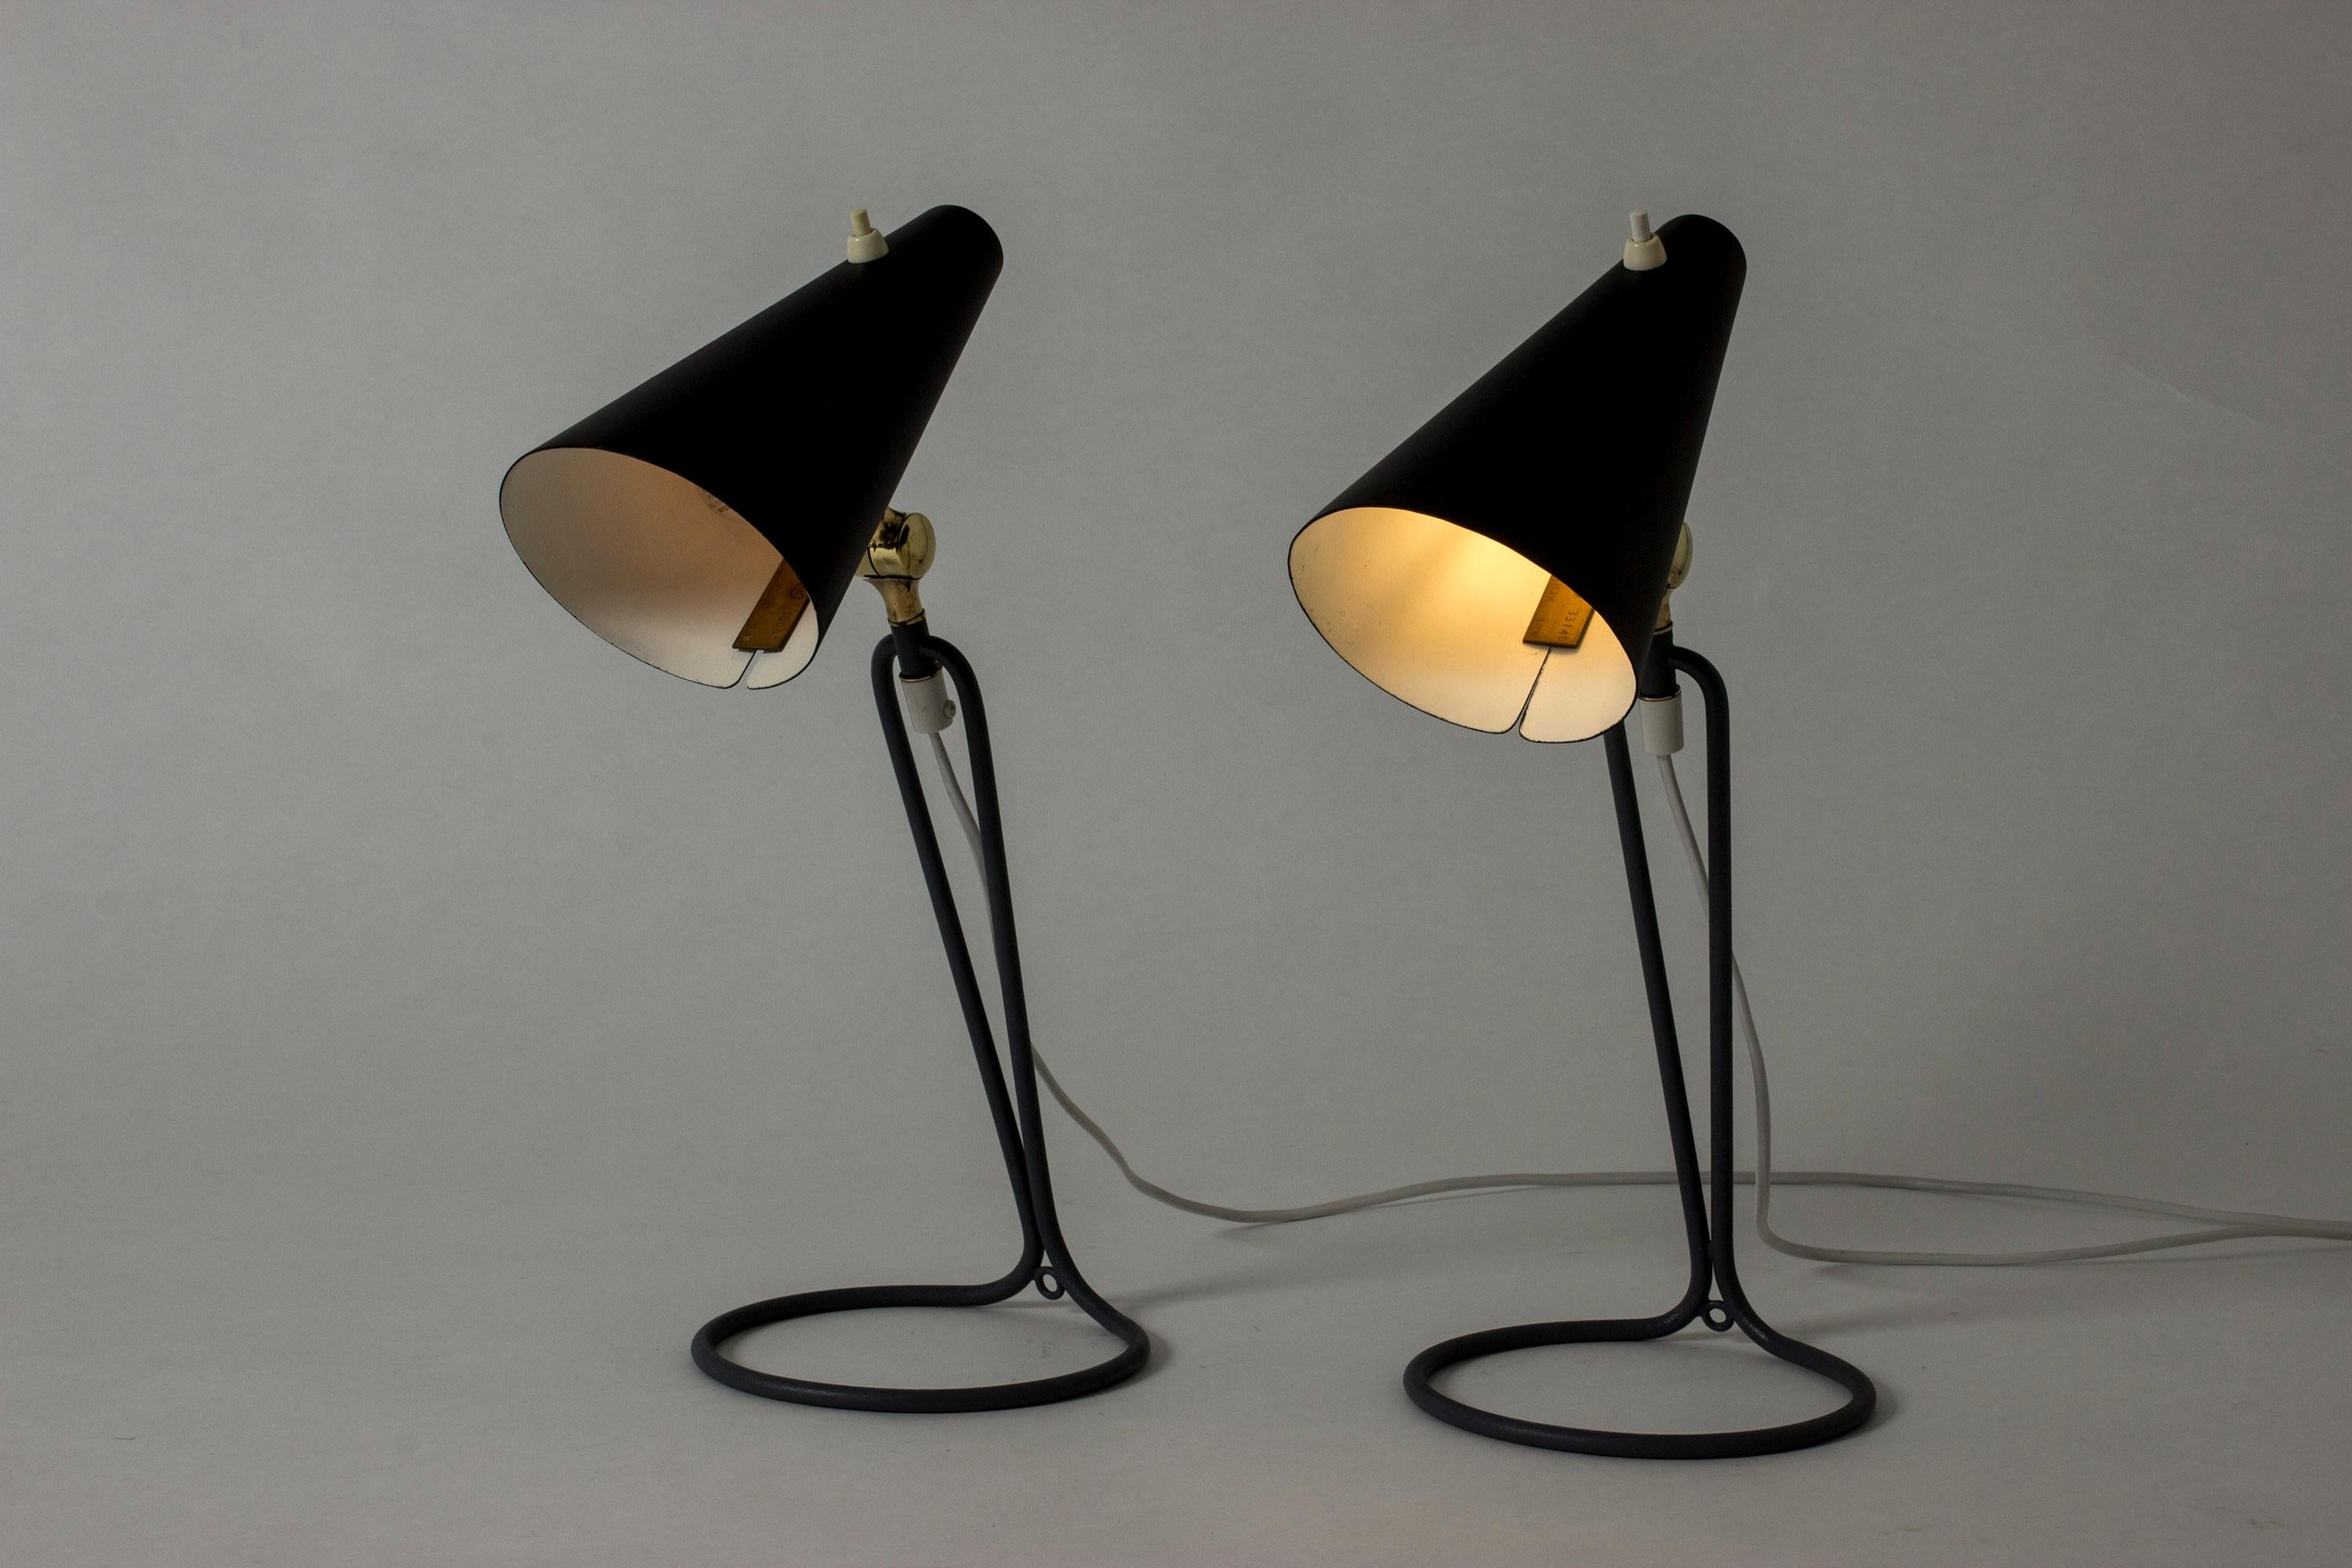 Zwei tolle Tischlampen von Bertil Brisborg, mit schwarz lackierten Schirmen. Kühle graue Basis in schlankem grafischem Design. Kontrastierende Messinggelenke.